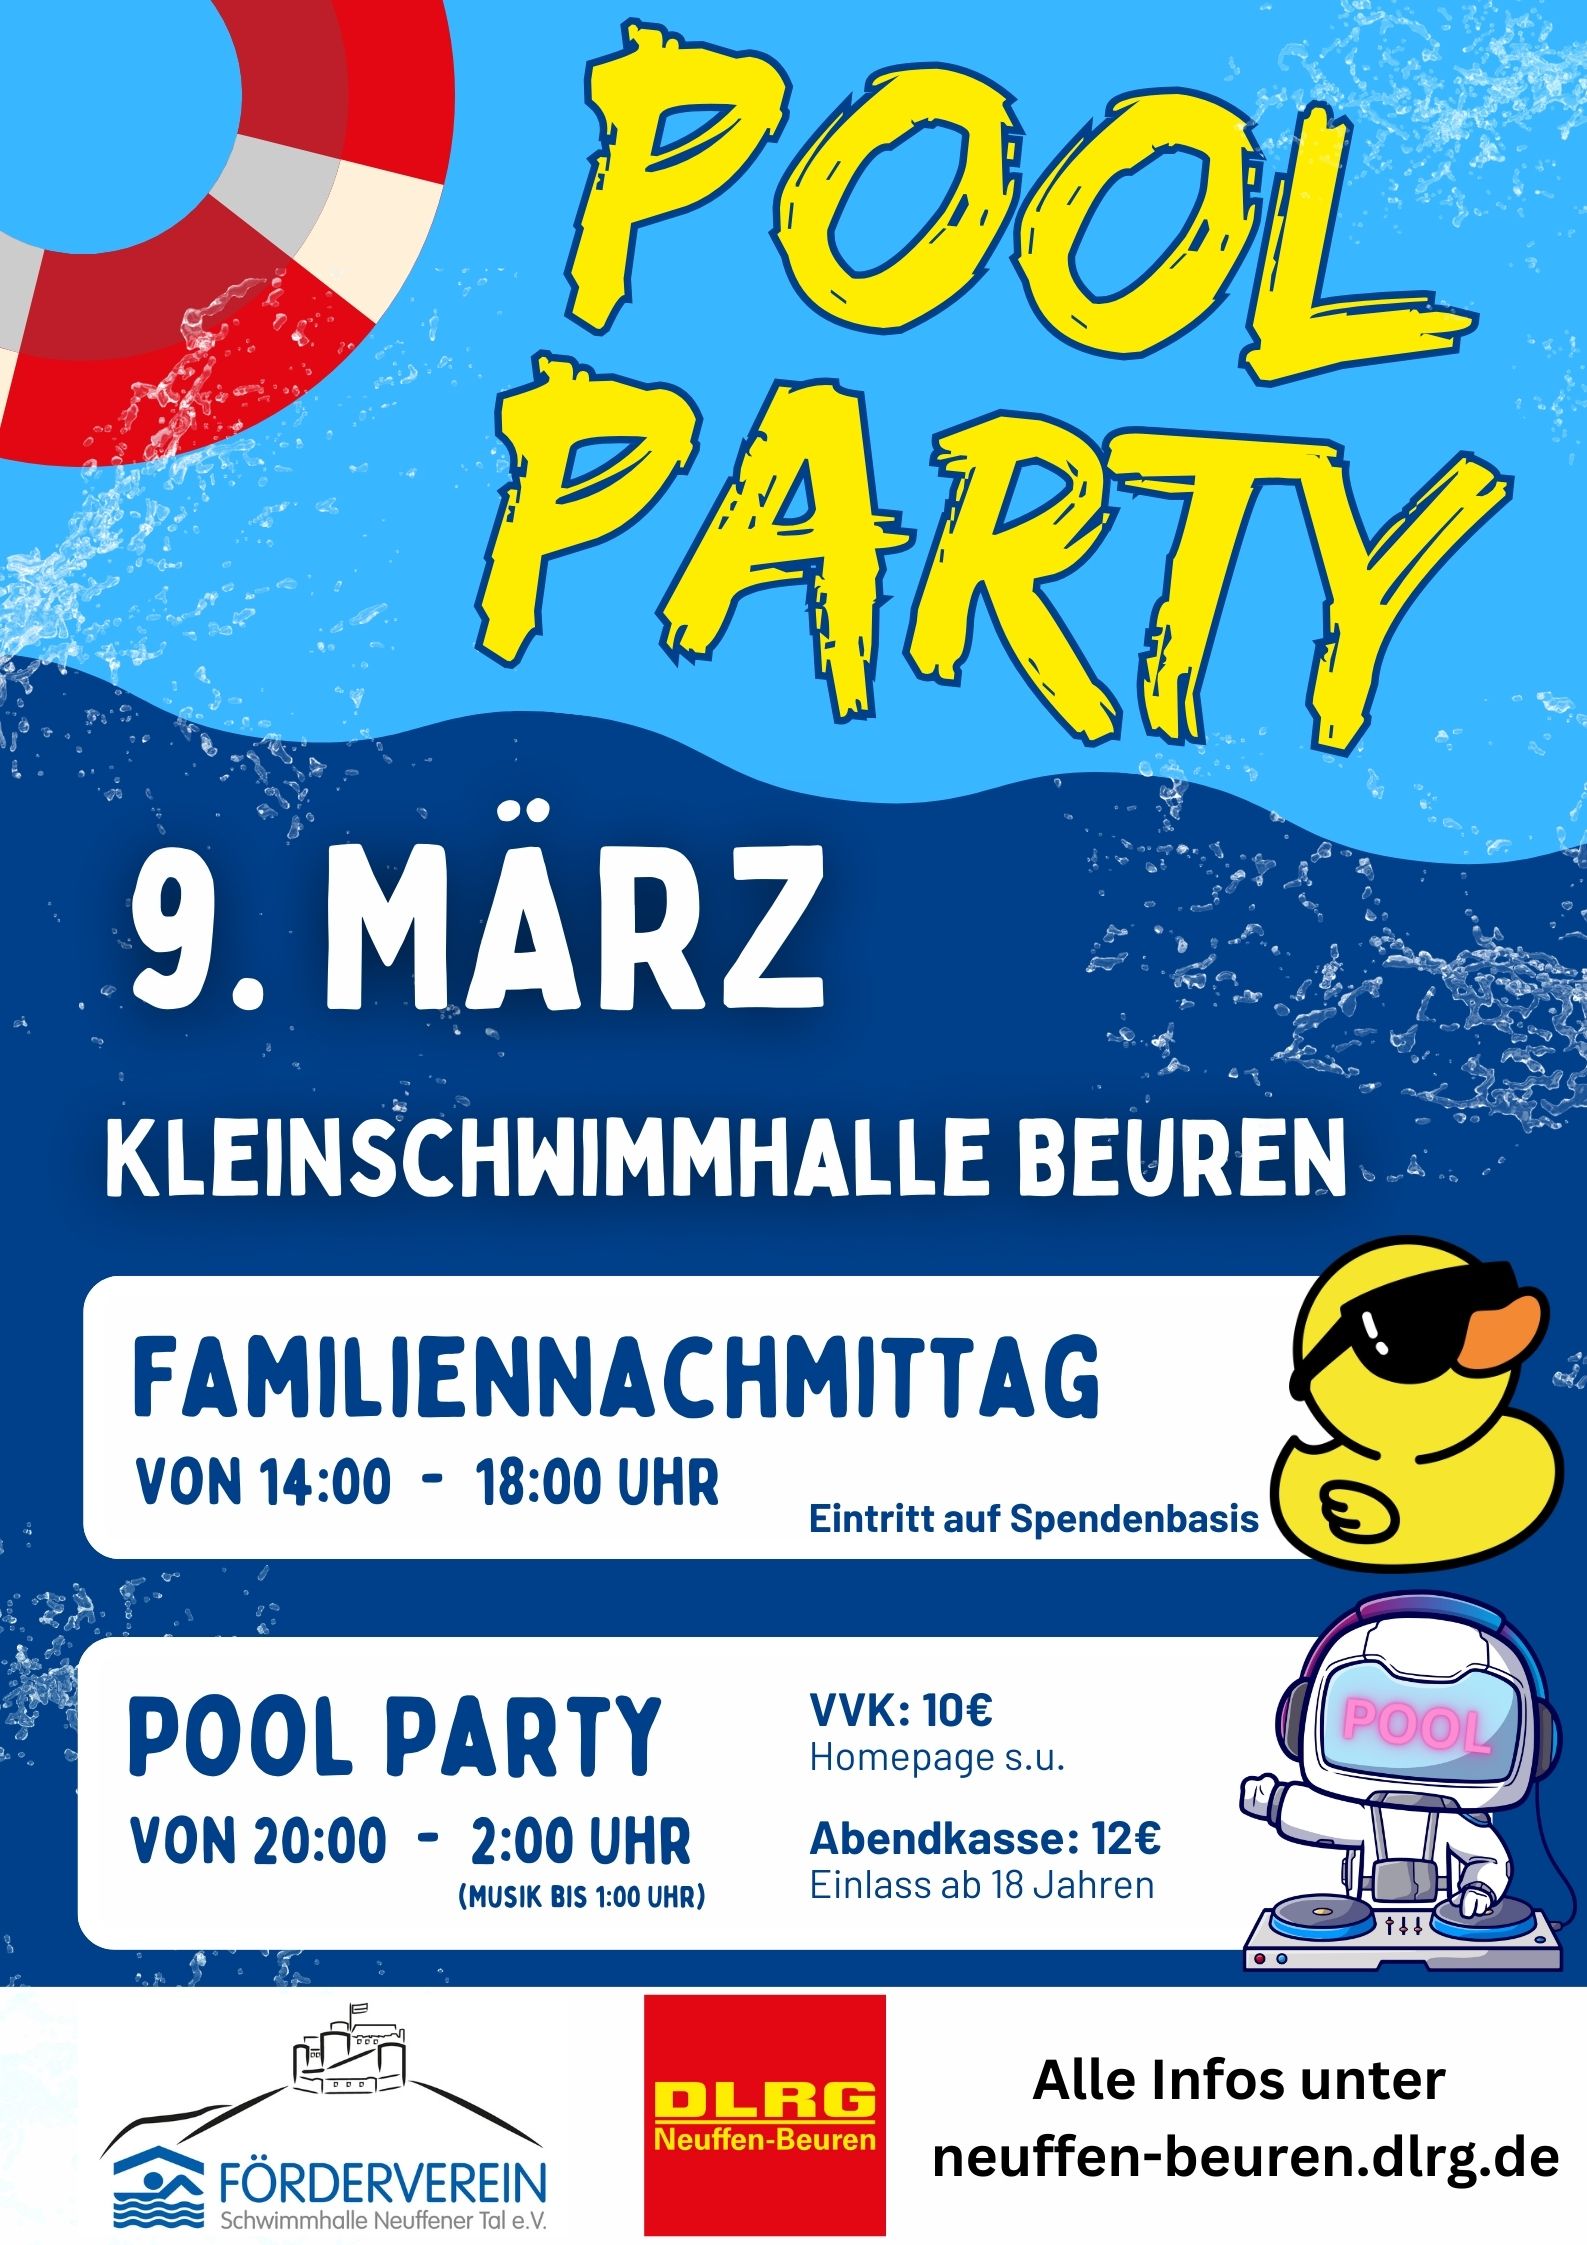 Pool Party und Familiennachmittag in der Kleinschwimmhalle